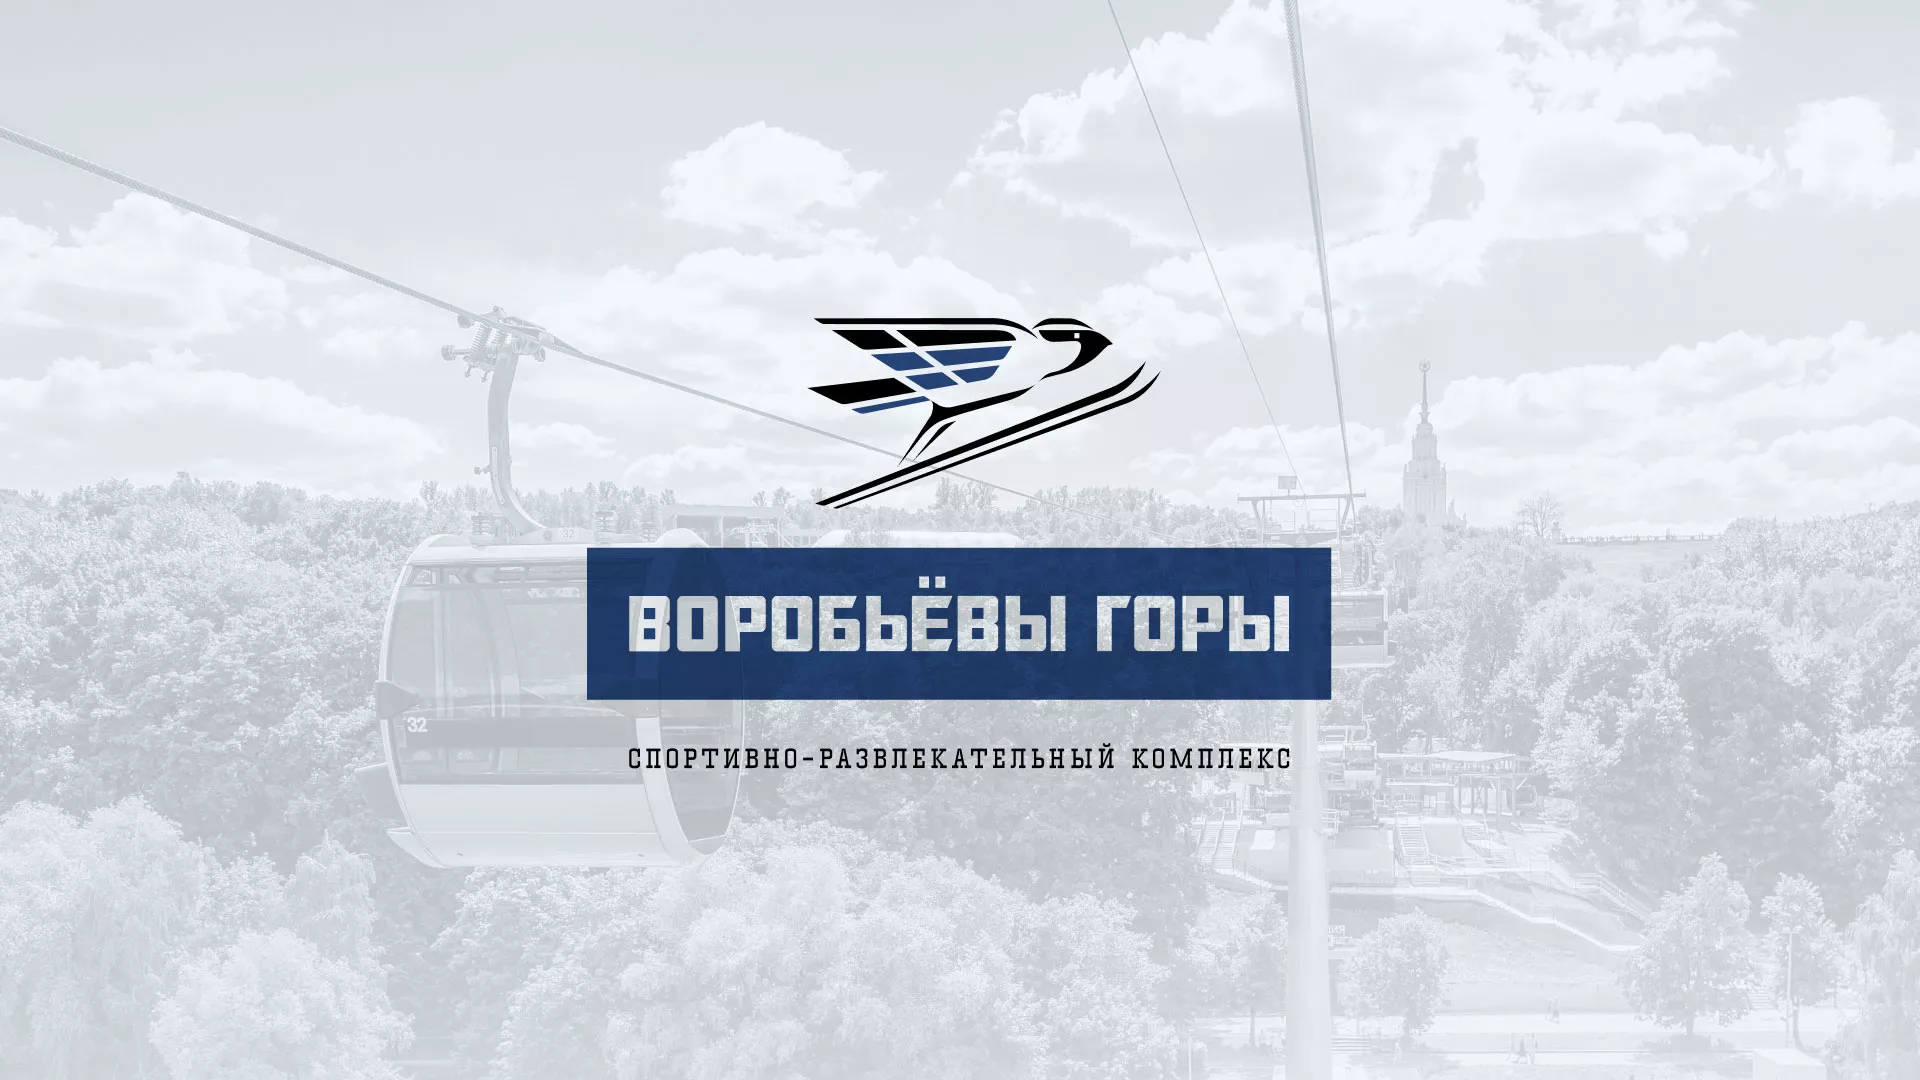 Разработка сайта в Вязьме для спортивно-развлекательного комплекса «Воробьёвы горы»